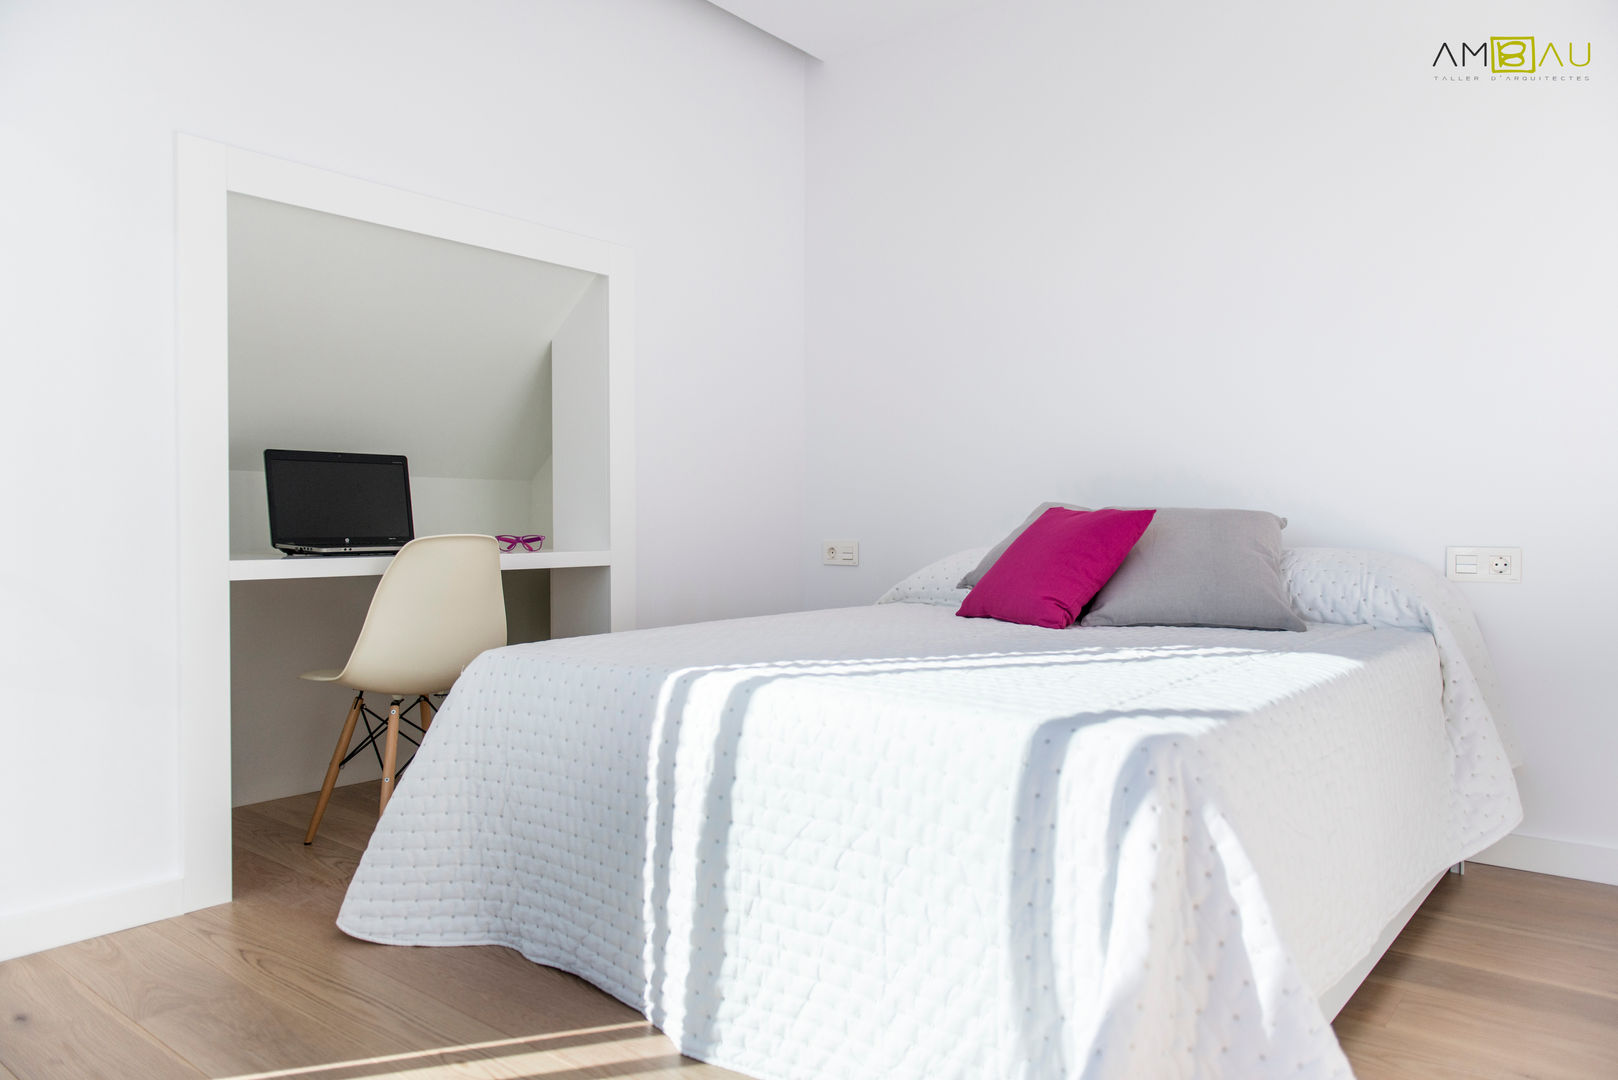 ATICO EN JOAQUIN COSTA, amBau Gestion y Proyectos amBau Gestion y Proyectos Eclectic style bedroom